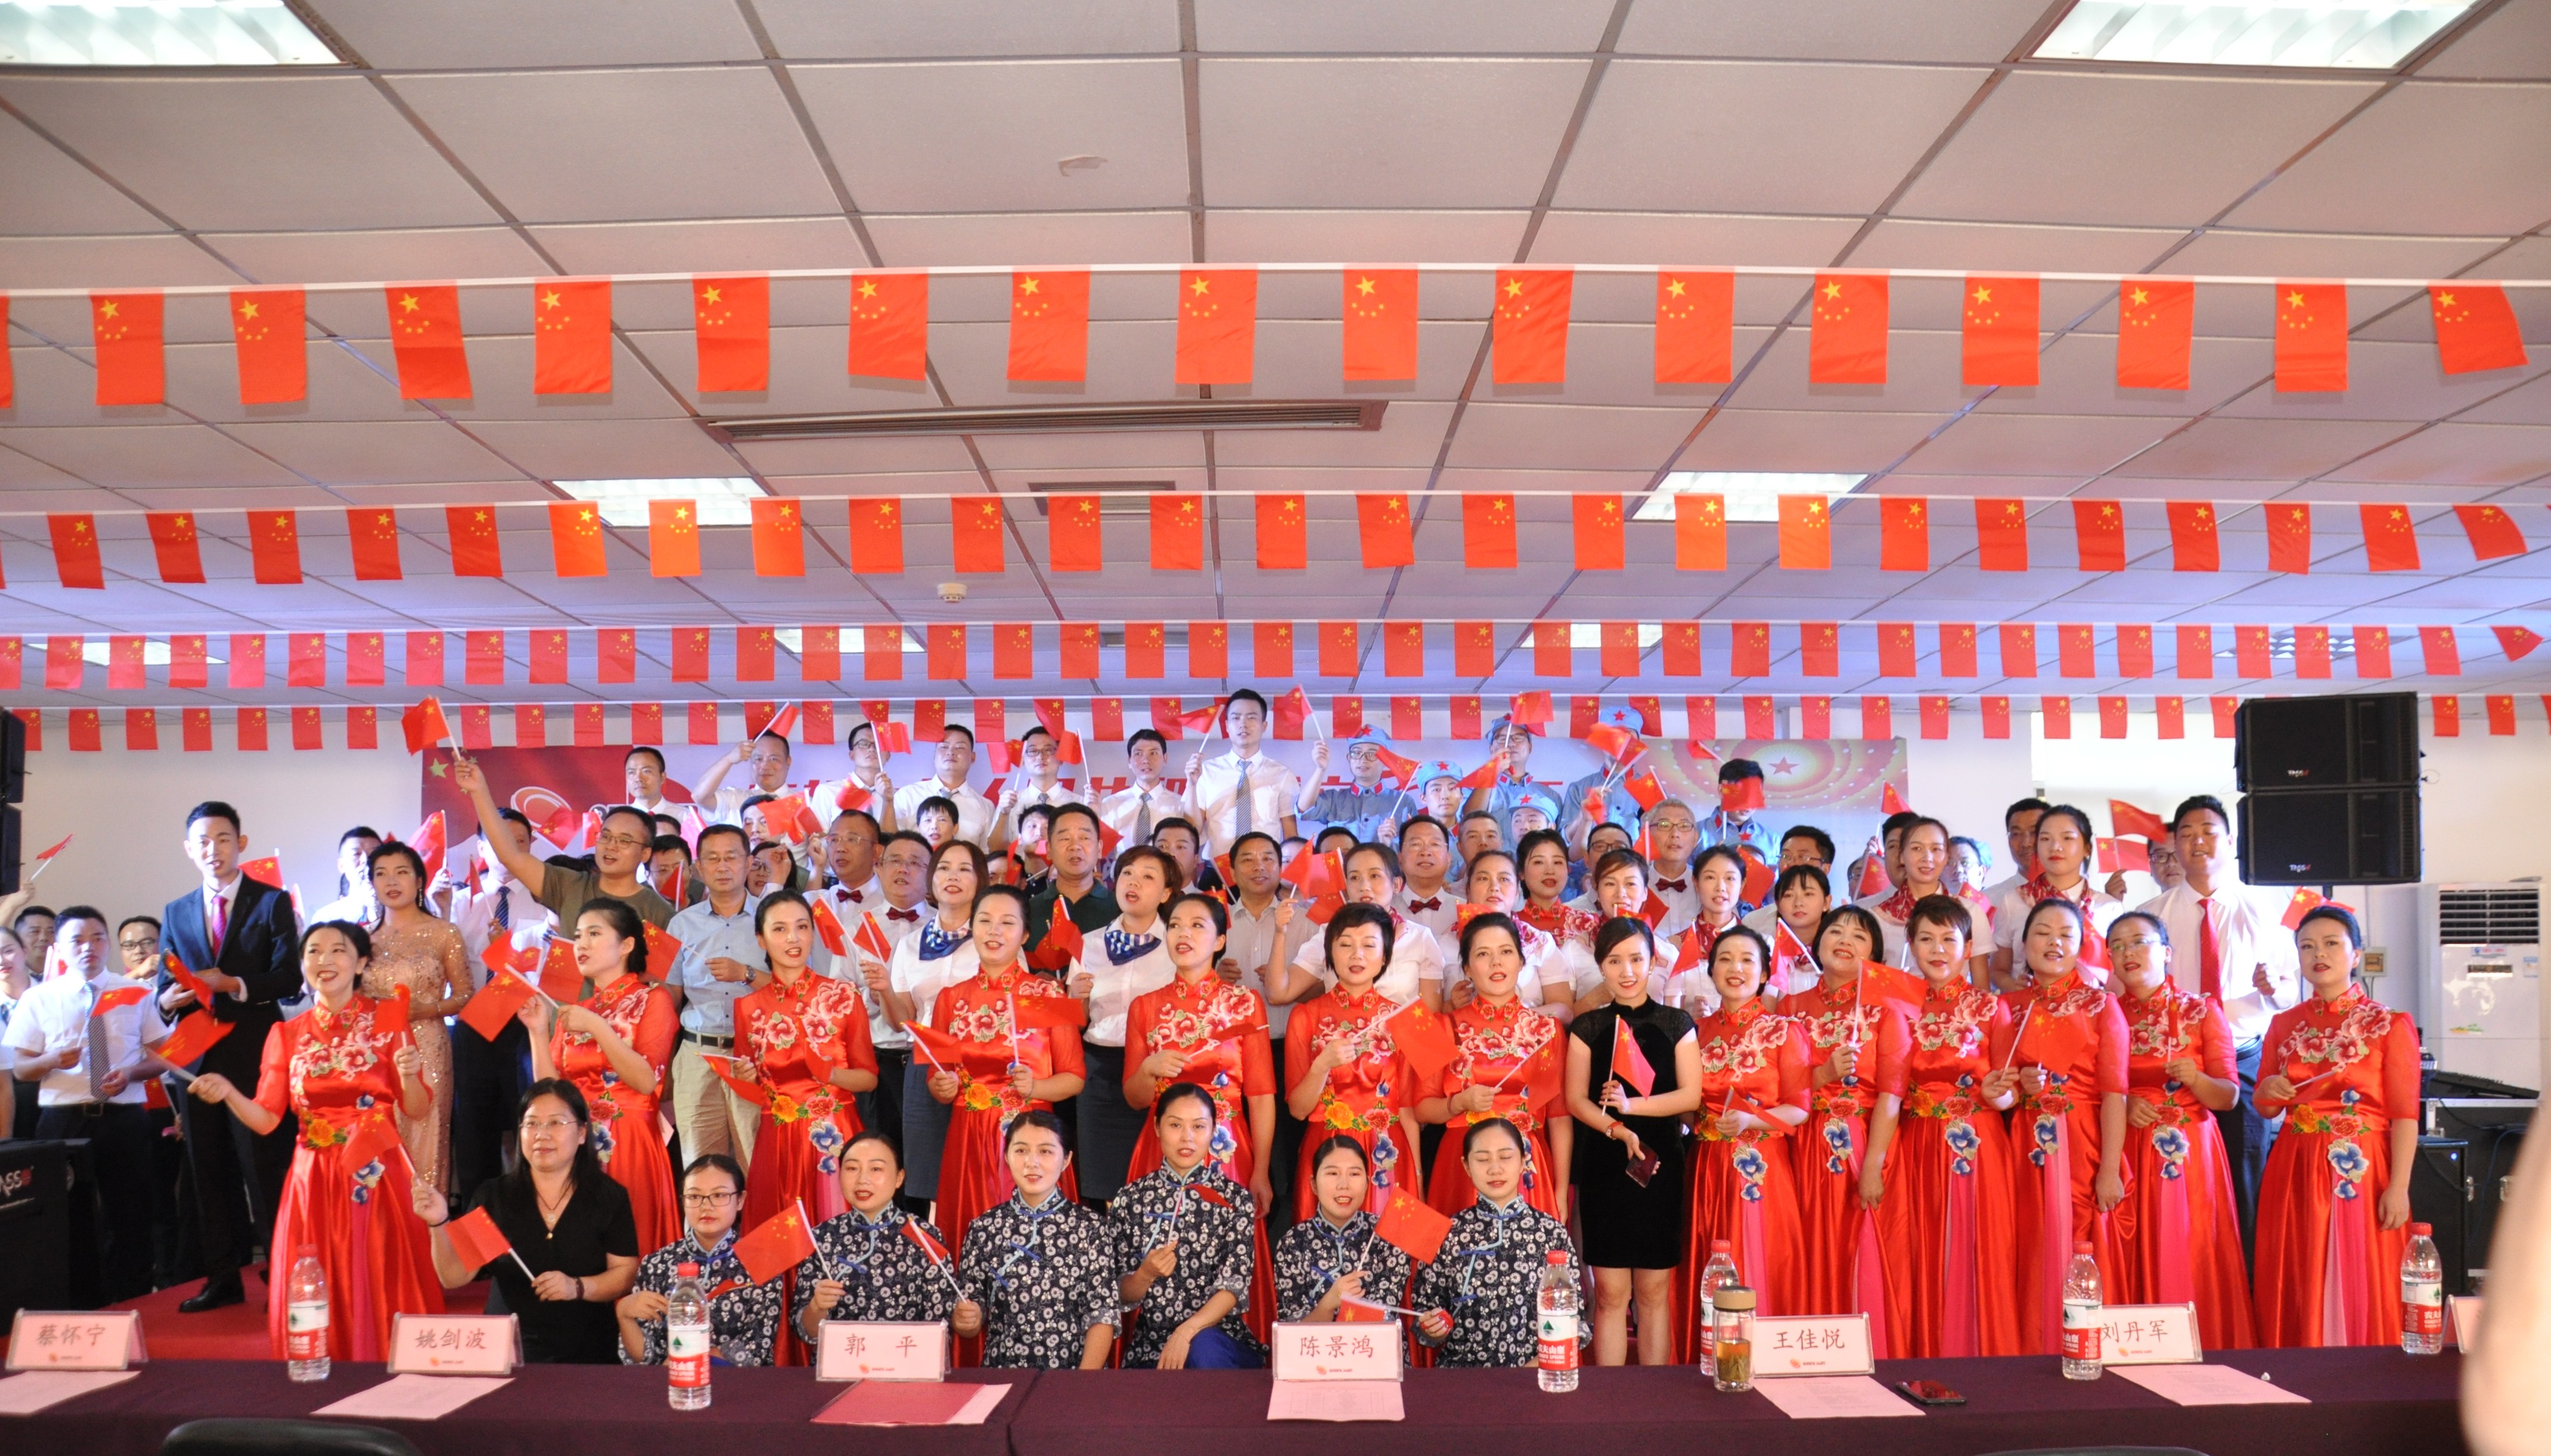 西班牙VS意大利（中国）有限公司隆重举办庆祝中华人民共和国成立70周年“普照杯”歌咏比赛